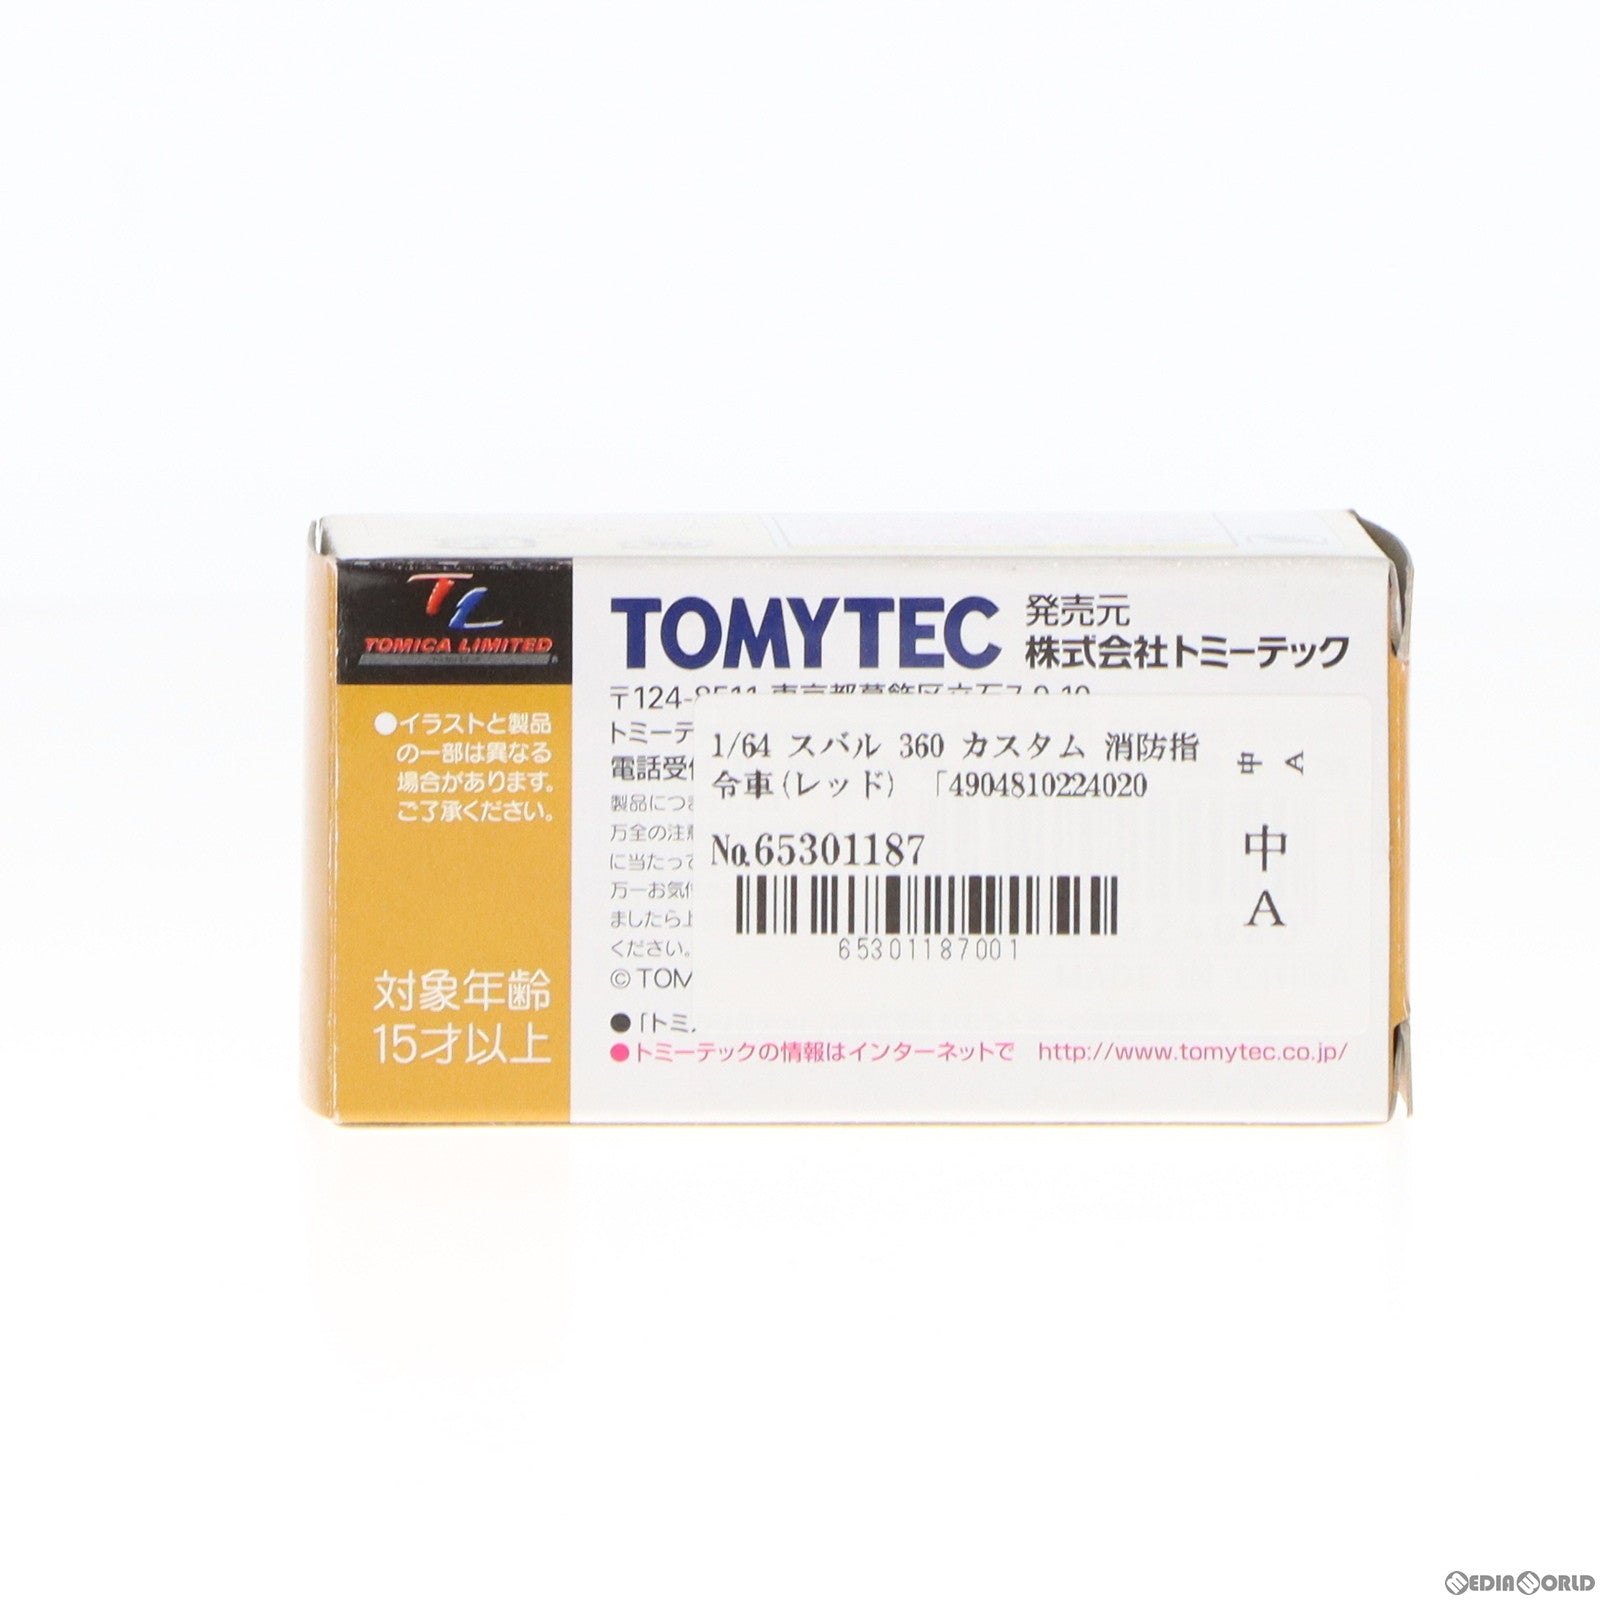 【中古即納】[MDL]トミカリミテッドヴィンテージ 1/64 スバル 360 カスタム 消防指令車(レッド) トミカショップオリジナル 完成品 ミニカー(224020) TOMYTEC(トミーテック)(20100228)